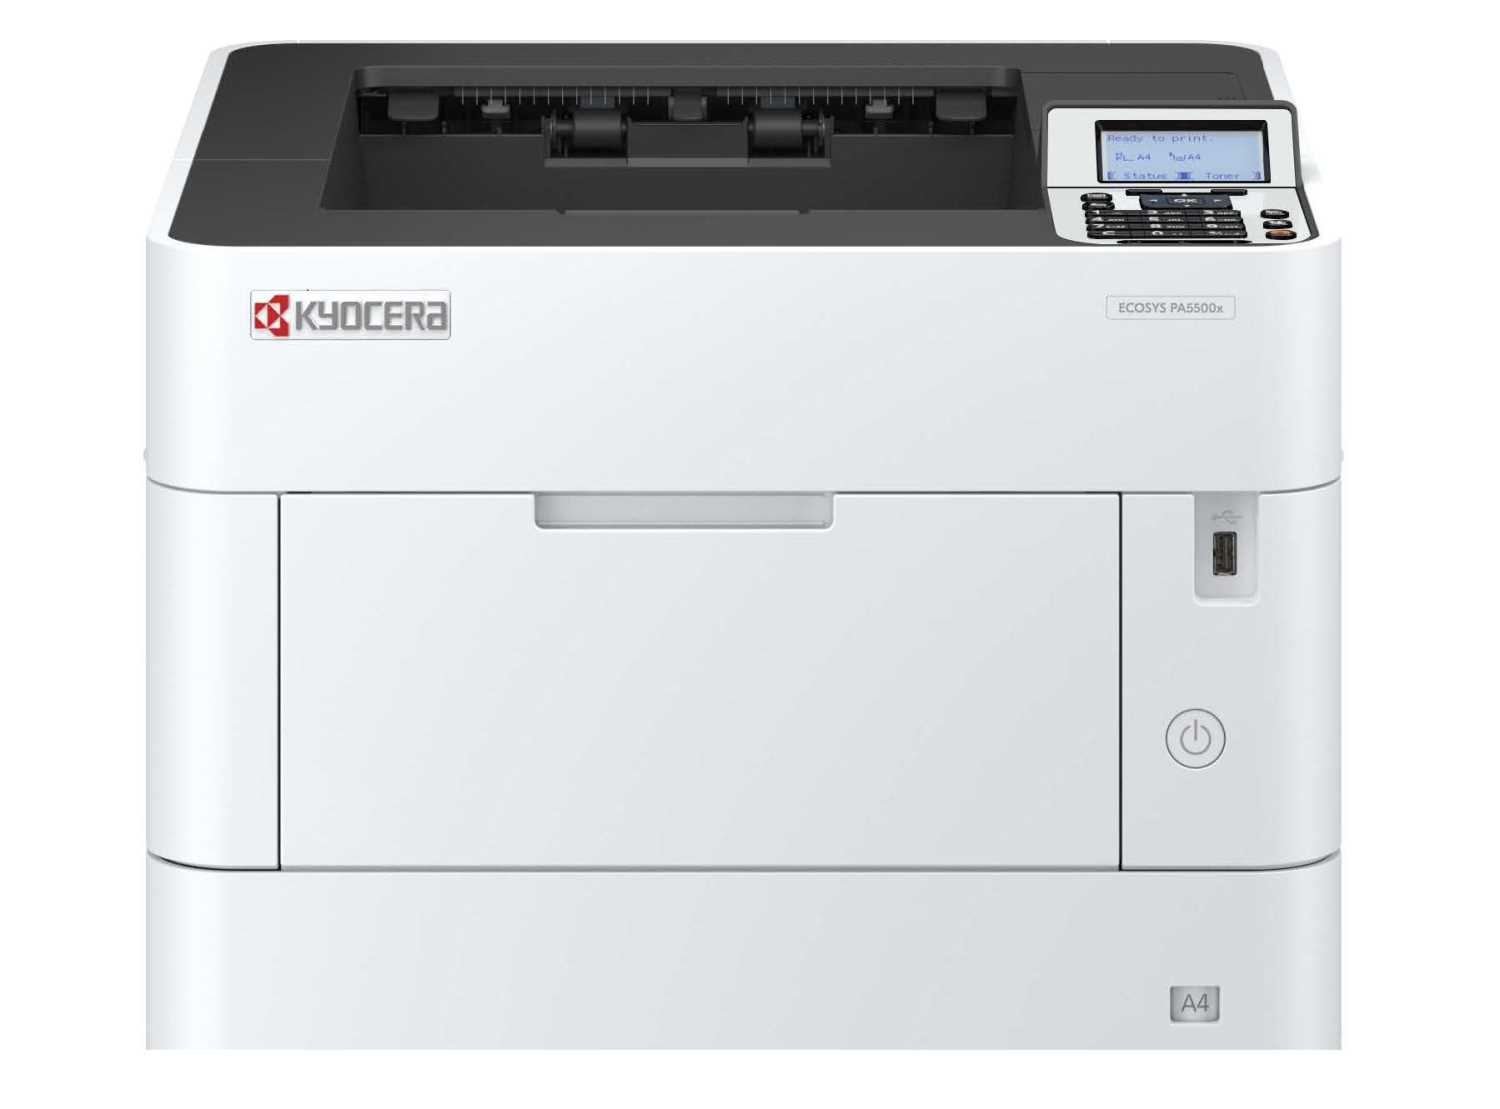 Купить Лазерный принтер Kyocera PA5500x (А4, 1200dpi, 512Mb, 55 ppm, 500 + 100 л., дуплекс, USB 2.0, Gigabit Ethernet, тонер на 10K)